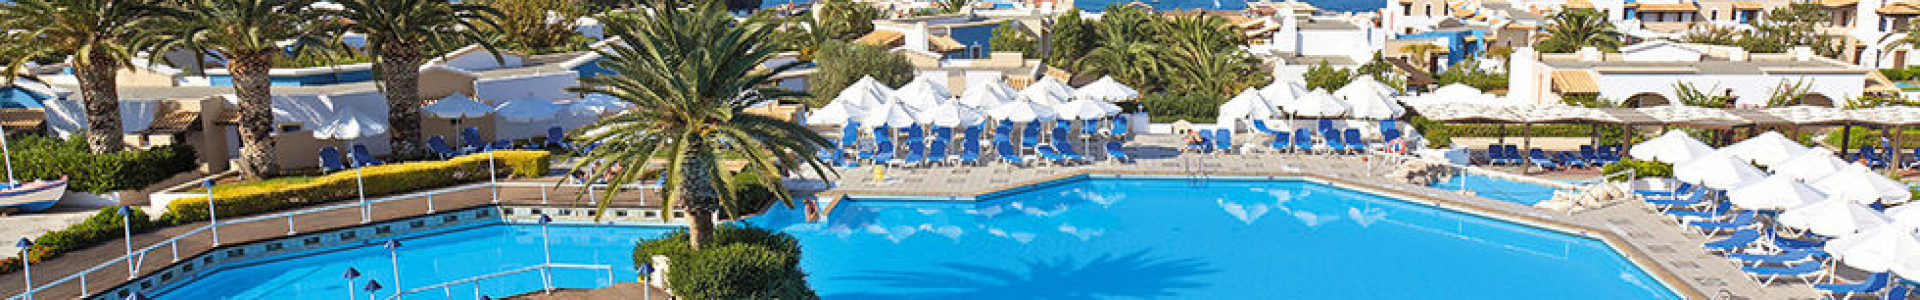 Voyage Privé : séjours 8j/7n en hôtels 4*/5* en Sardaigne, en Crète... - 70%